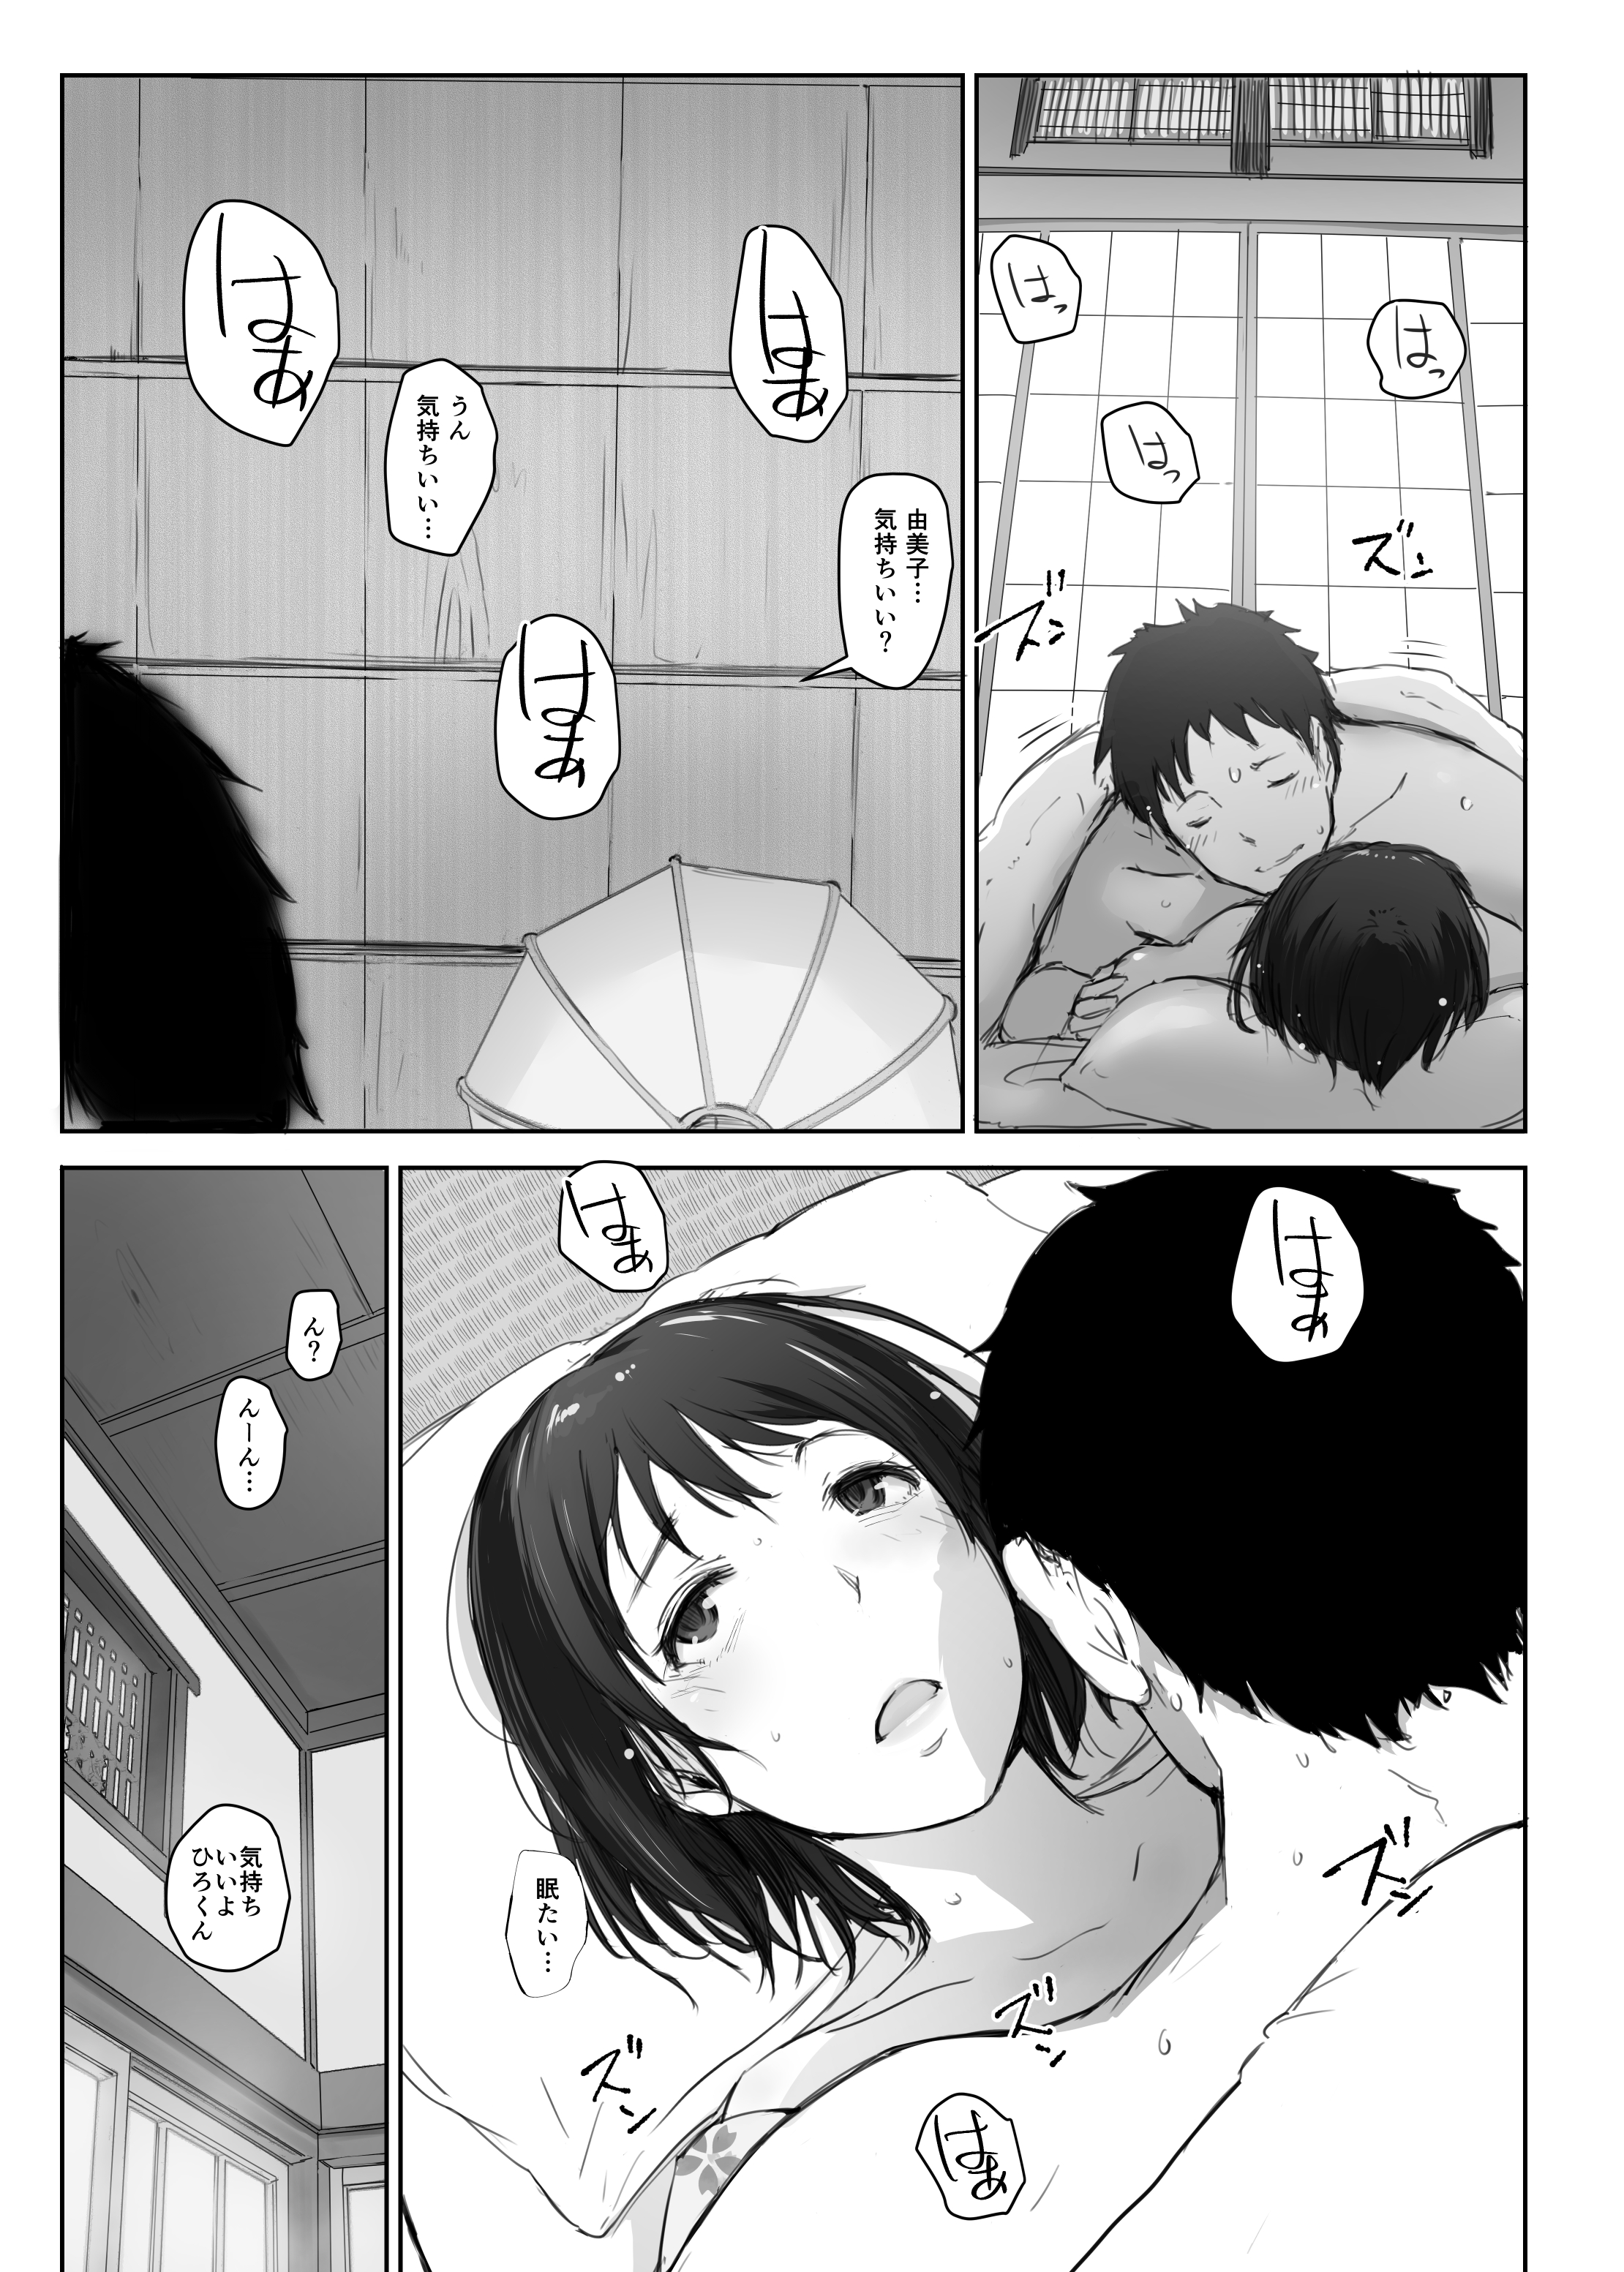 【オリジナル】人妻の由美子さんが旅行先でおじさんに寝取られて中出しをキメられてしまう…。の画像8枚目